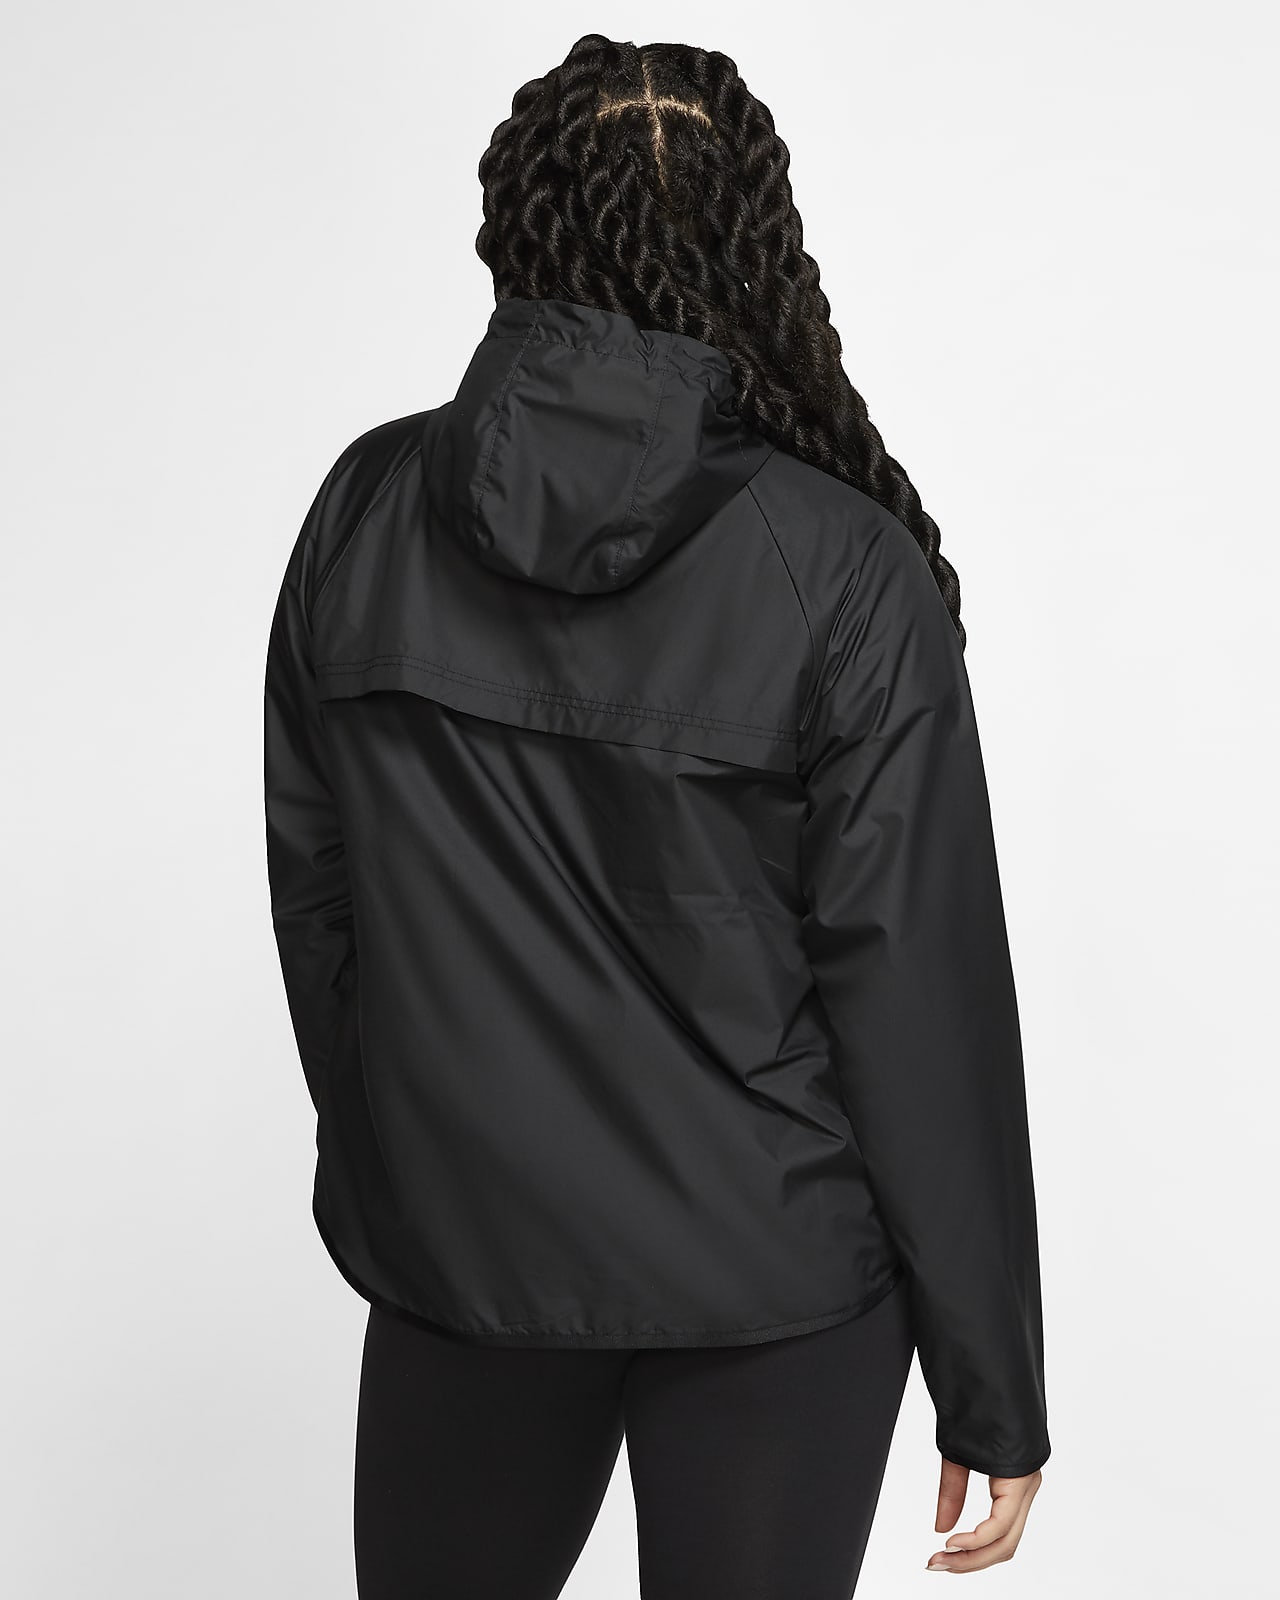 women's jacket nike sportswear windrunner